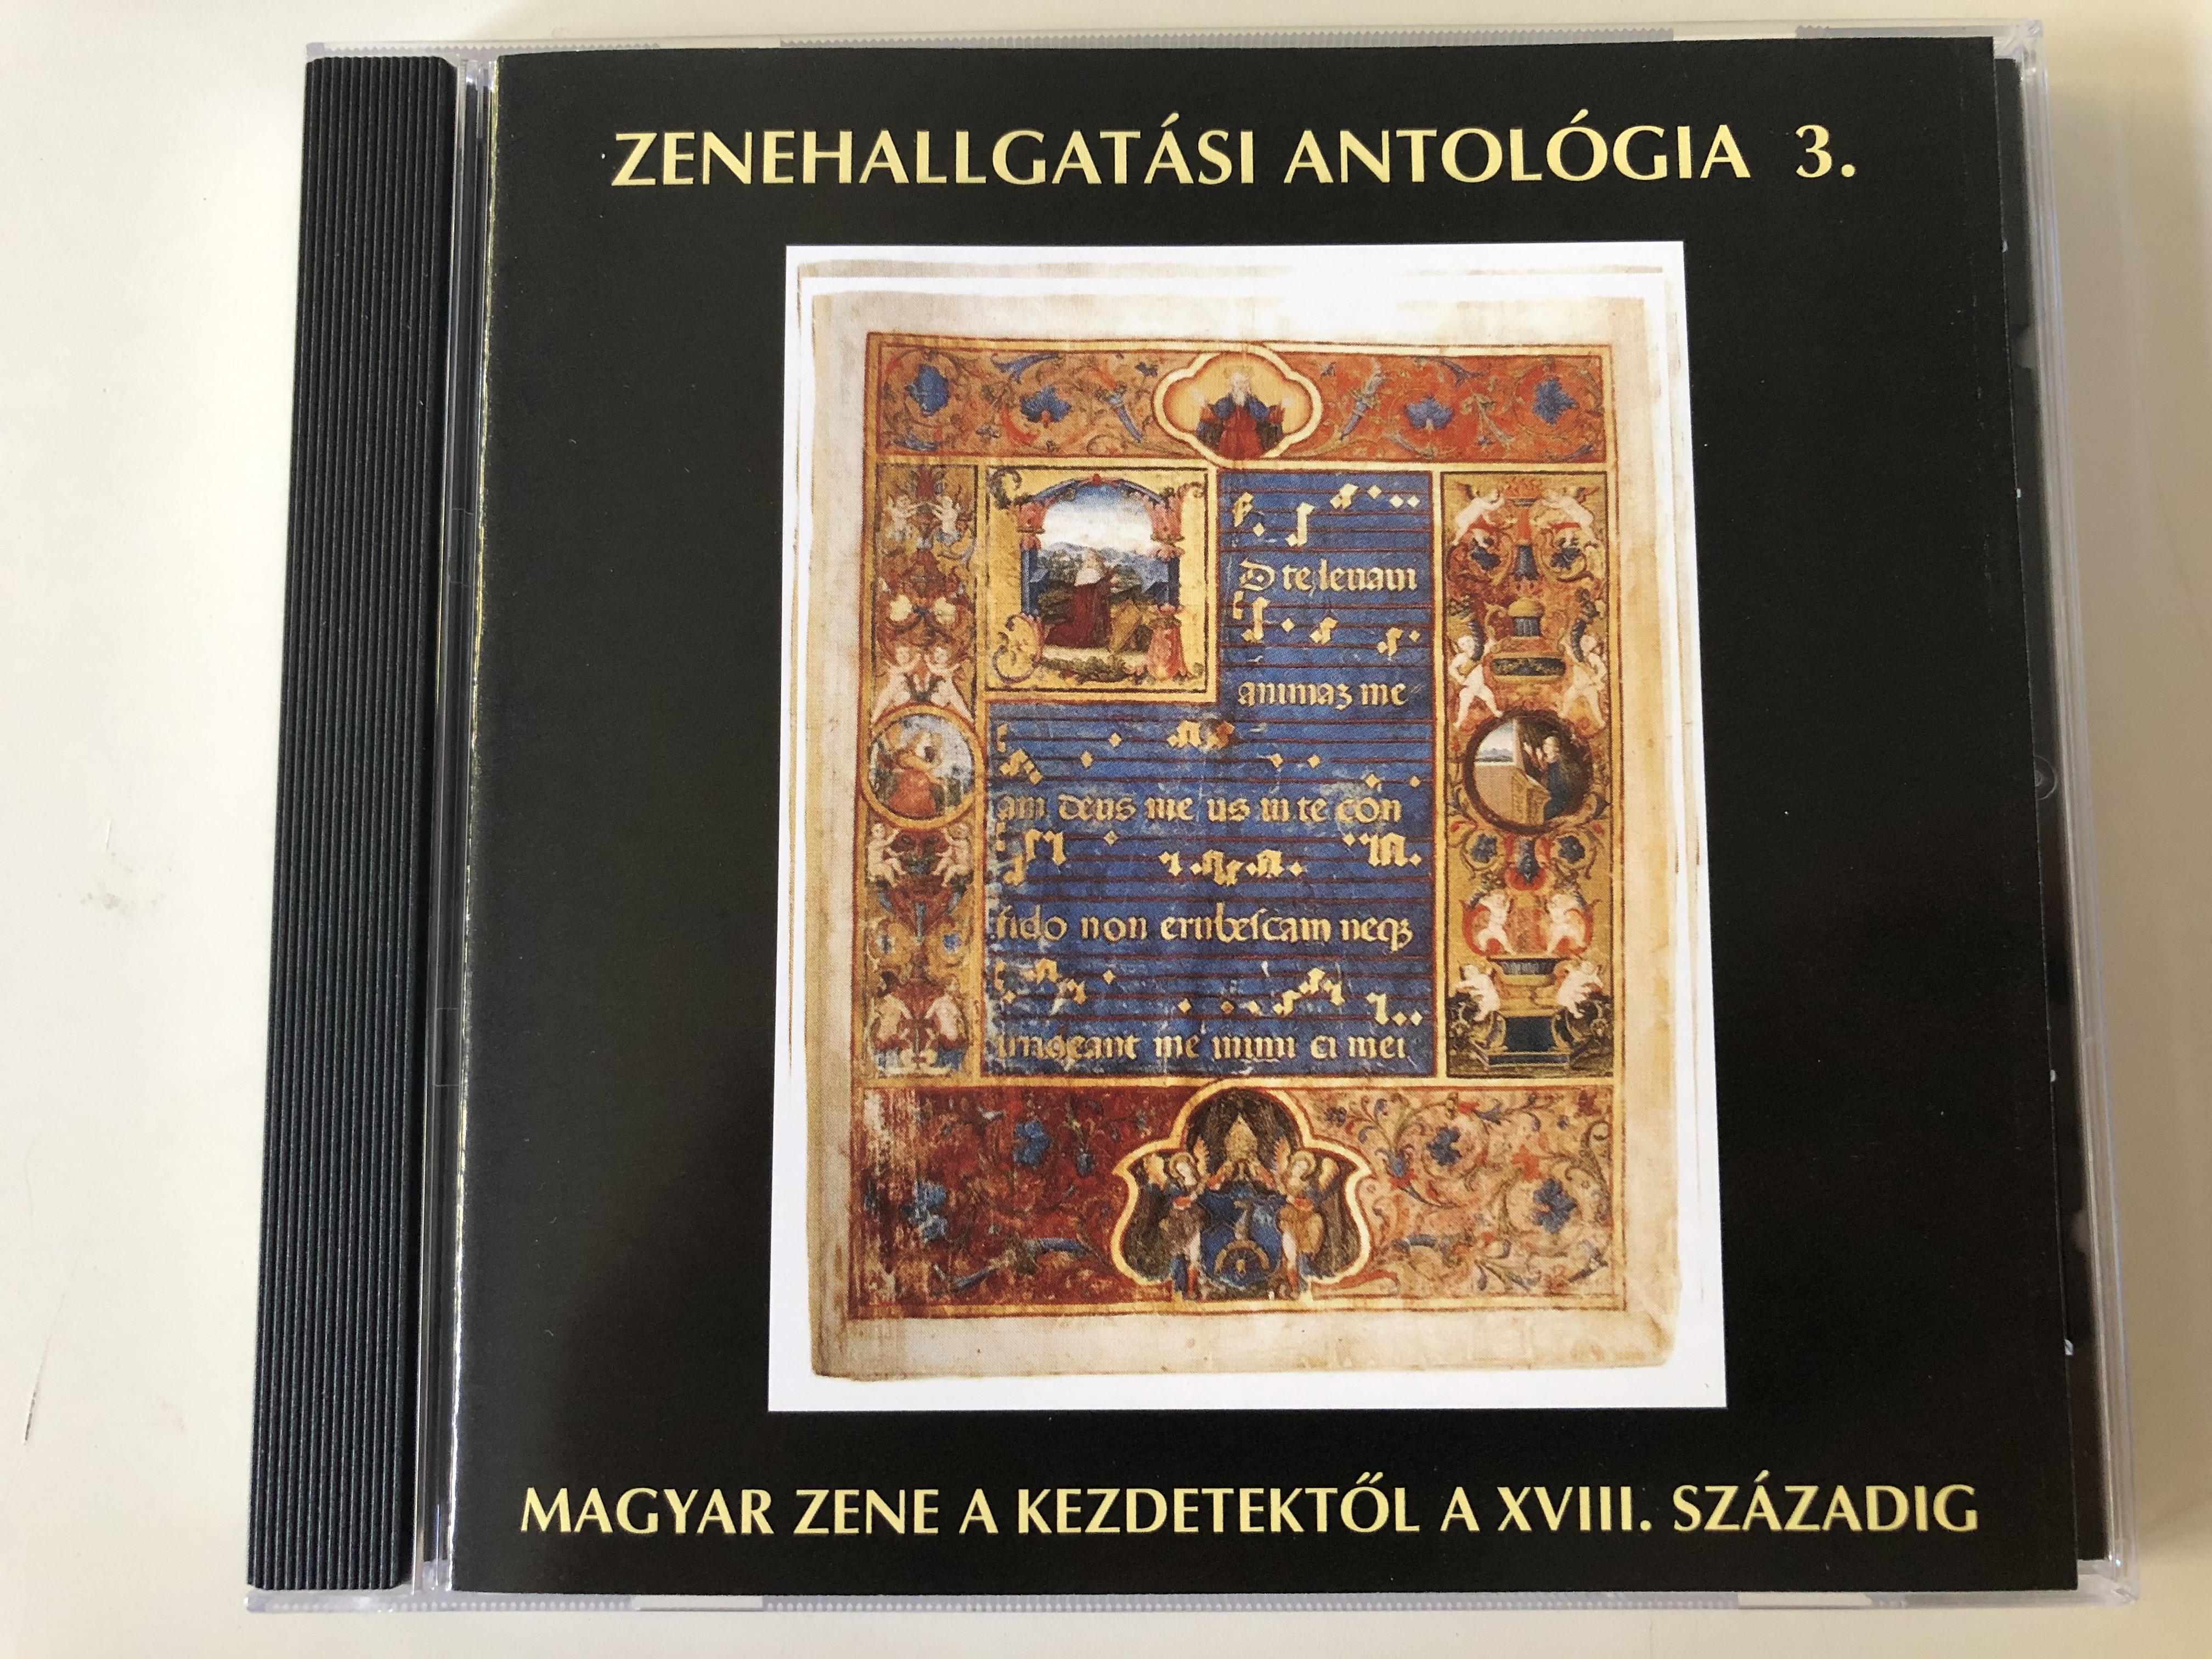 zenehallgat-si-antologia-3.-magyar-zene-a-kezdetektol-a-xviii.-szazadig-do-la-audio-cd-2007-dlcd-303-1-.jpg